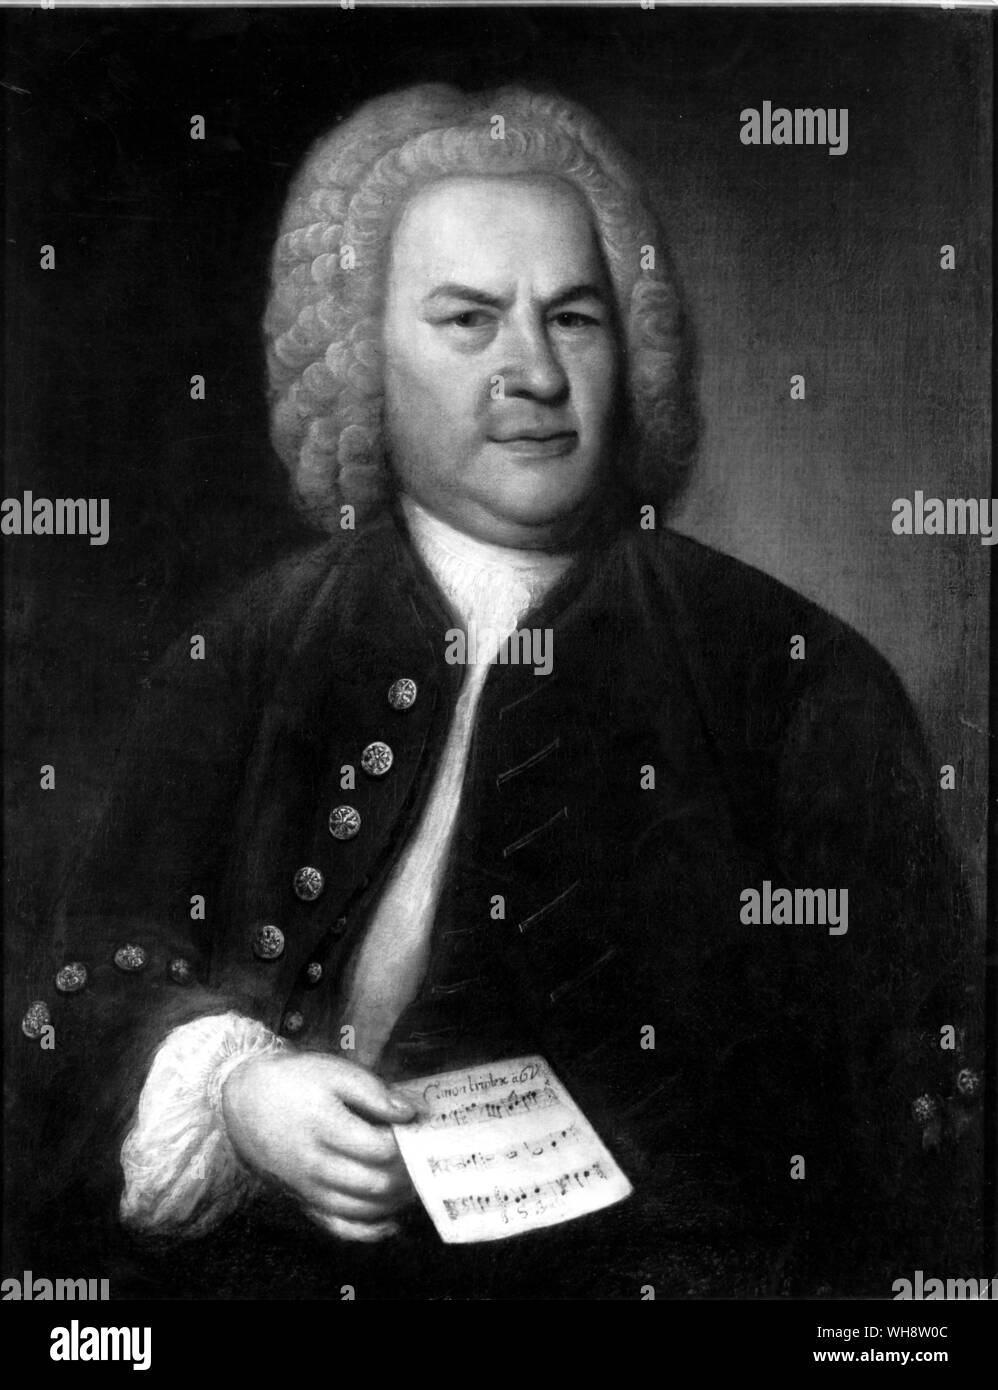 Malerei des deutschen Komponisten Johann Sebastian Bach (1685-1750) von Elias Gottlob Haussmann 1746. Bach ist von der Taille bis gezeigt, mit einem Blatt von Musik. Friedrich der Große von Nancy Mitford, Seite 154. Stockfoto